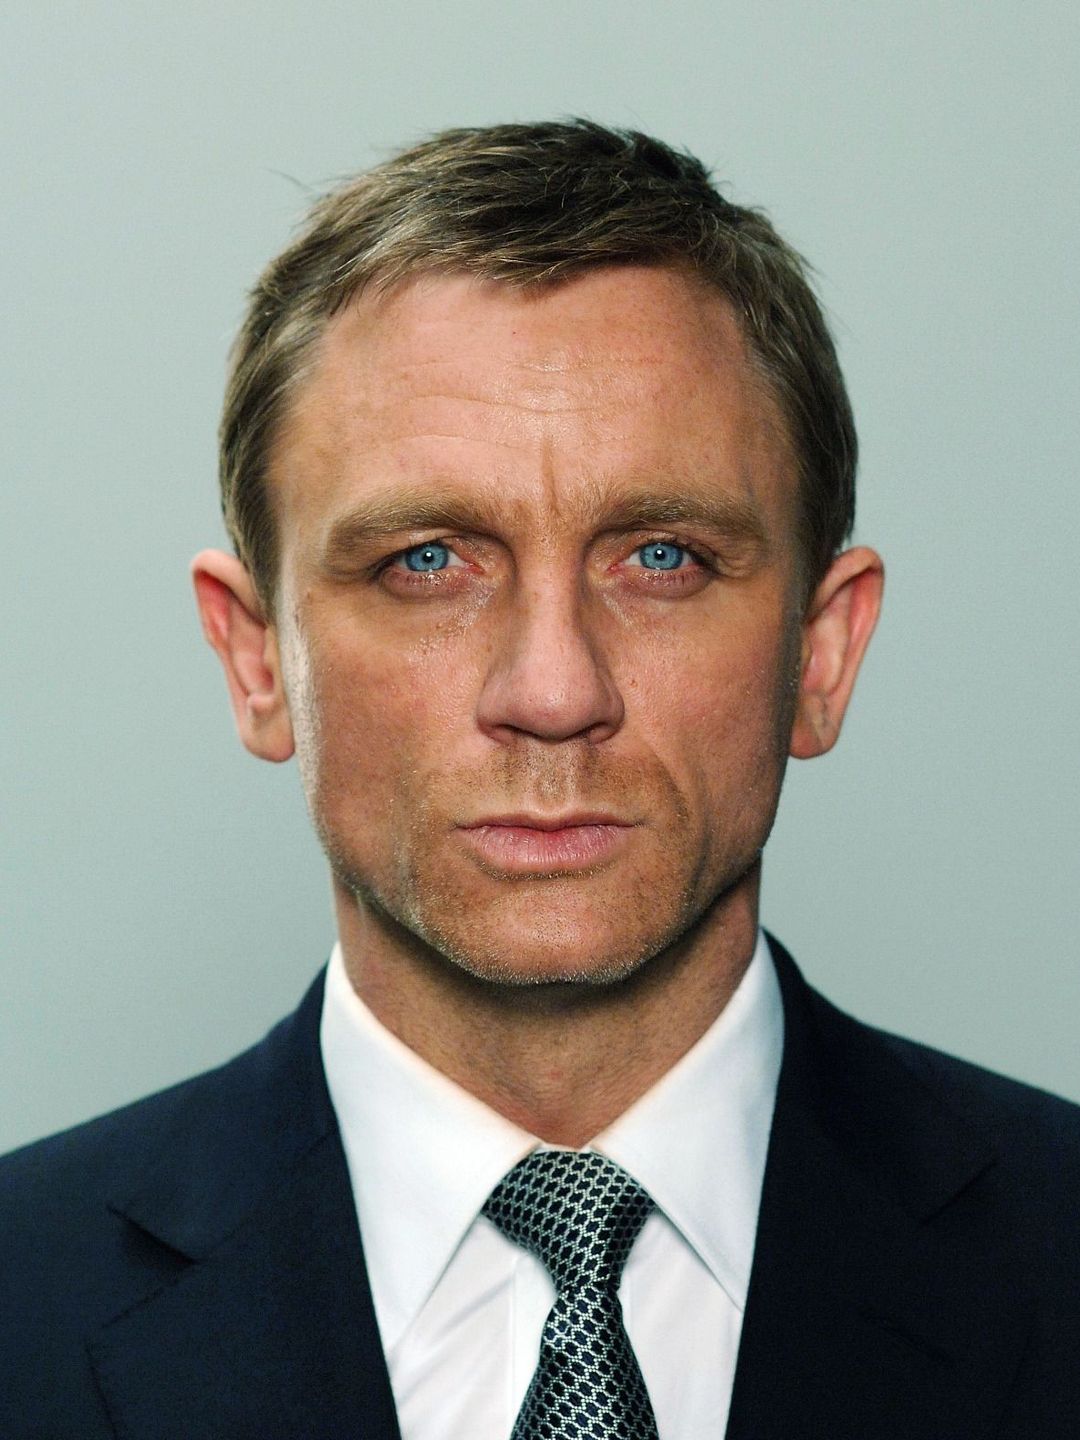 Daniel Craig current look